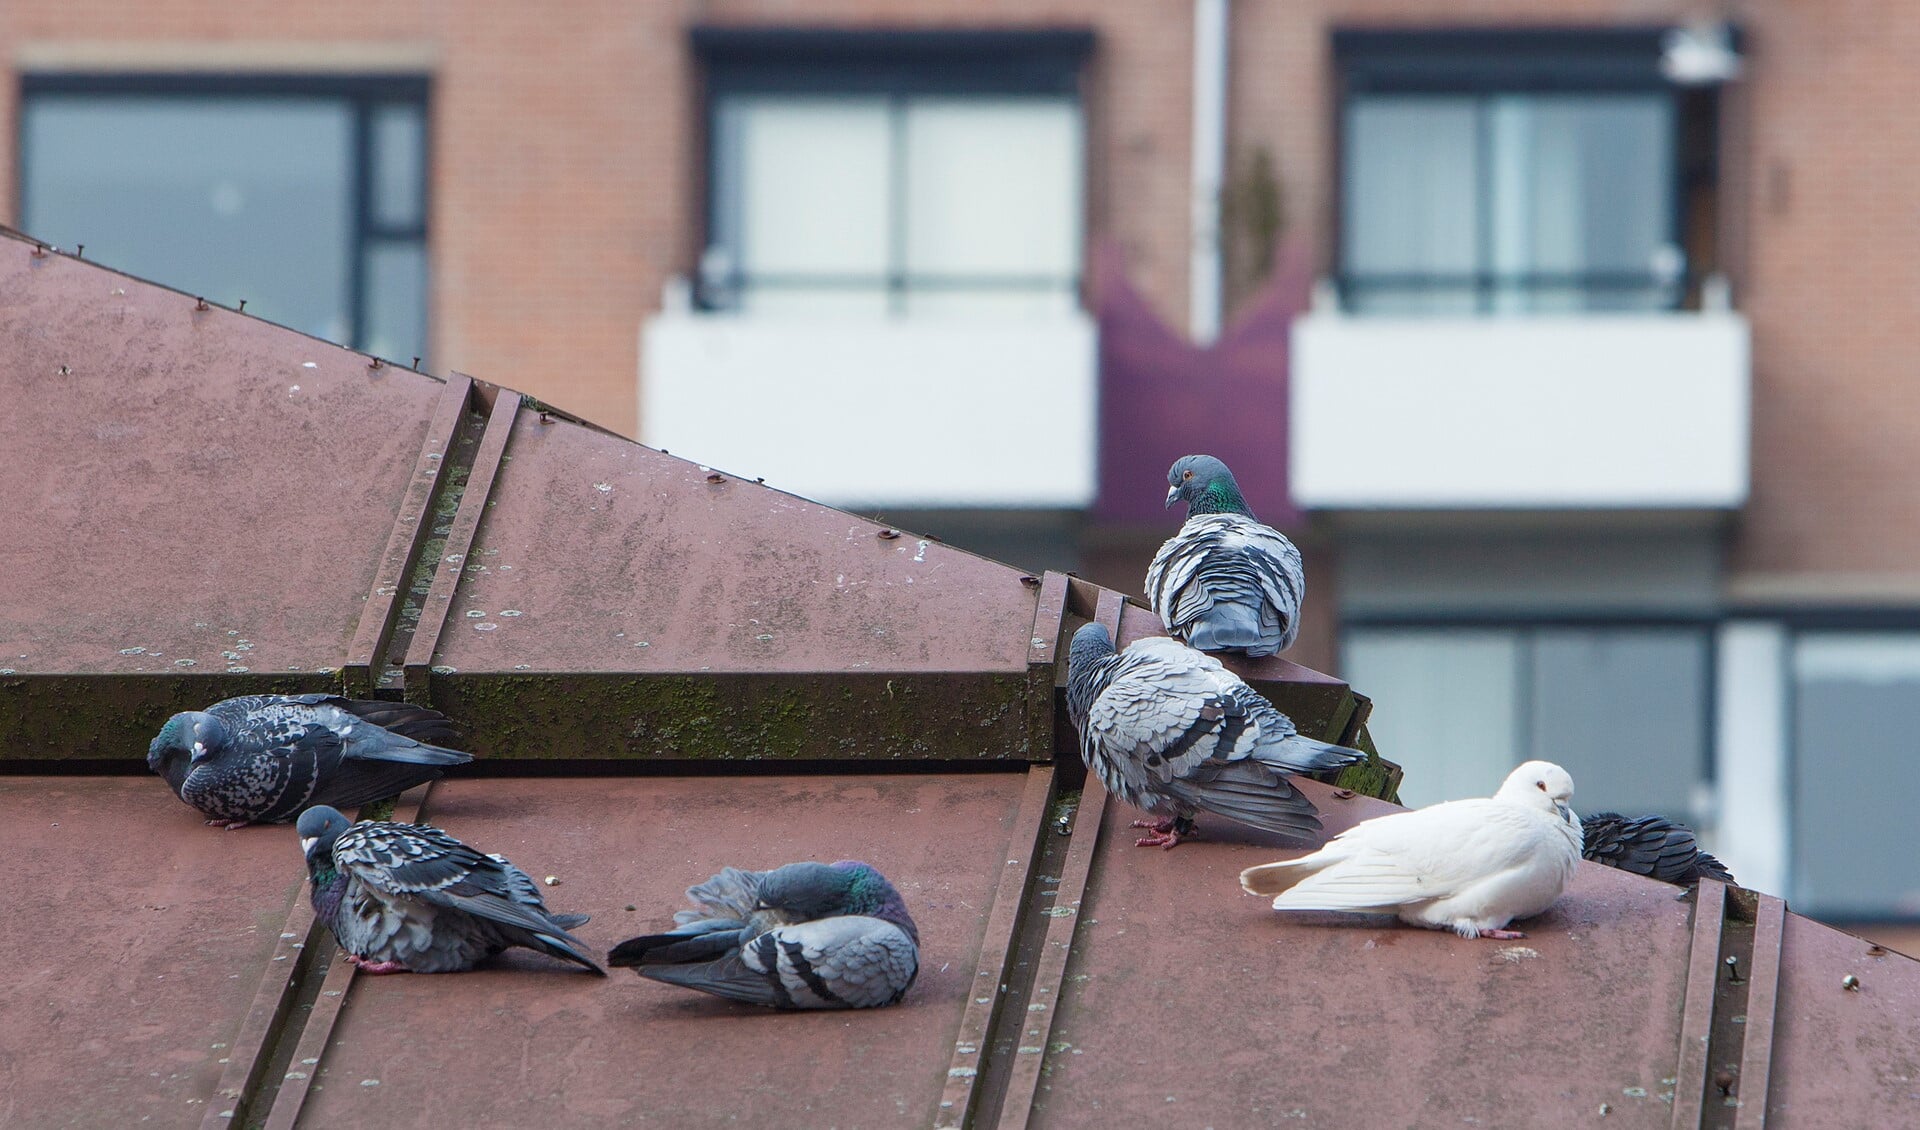 In de Oostermeent is een duivenprobleem dat de gemeente gaat aanpakken met onder andere een voerverbod.